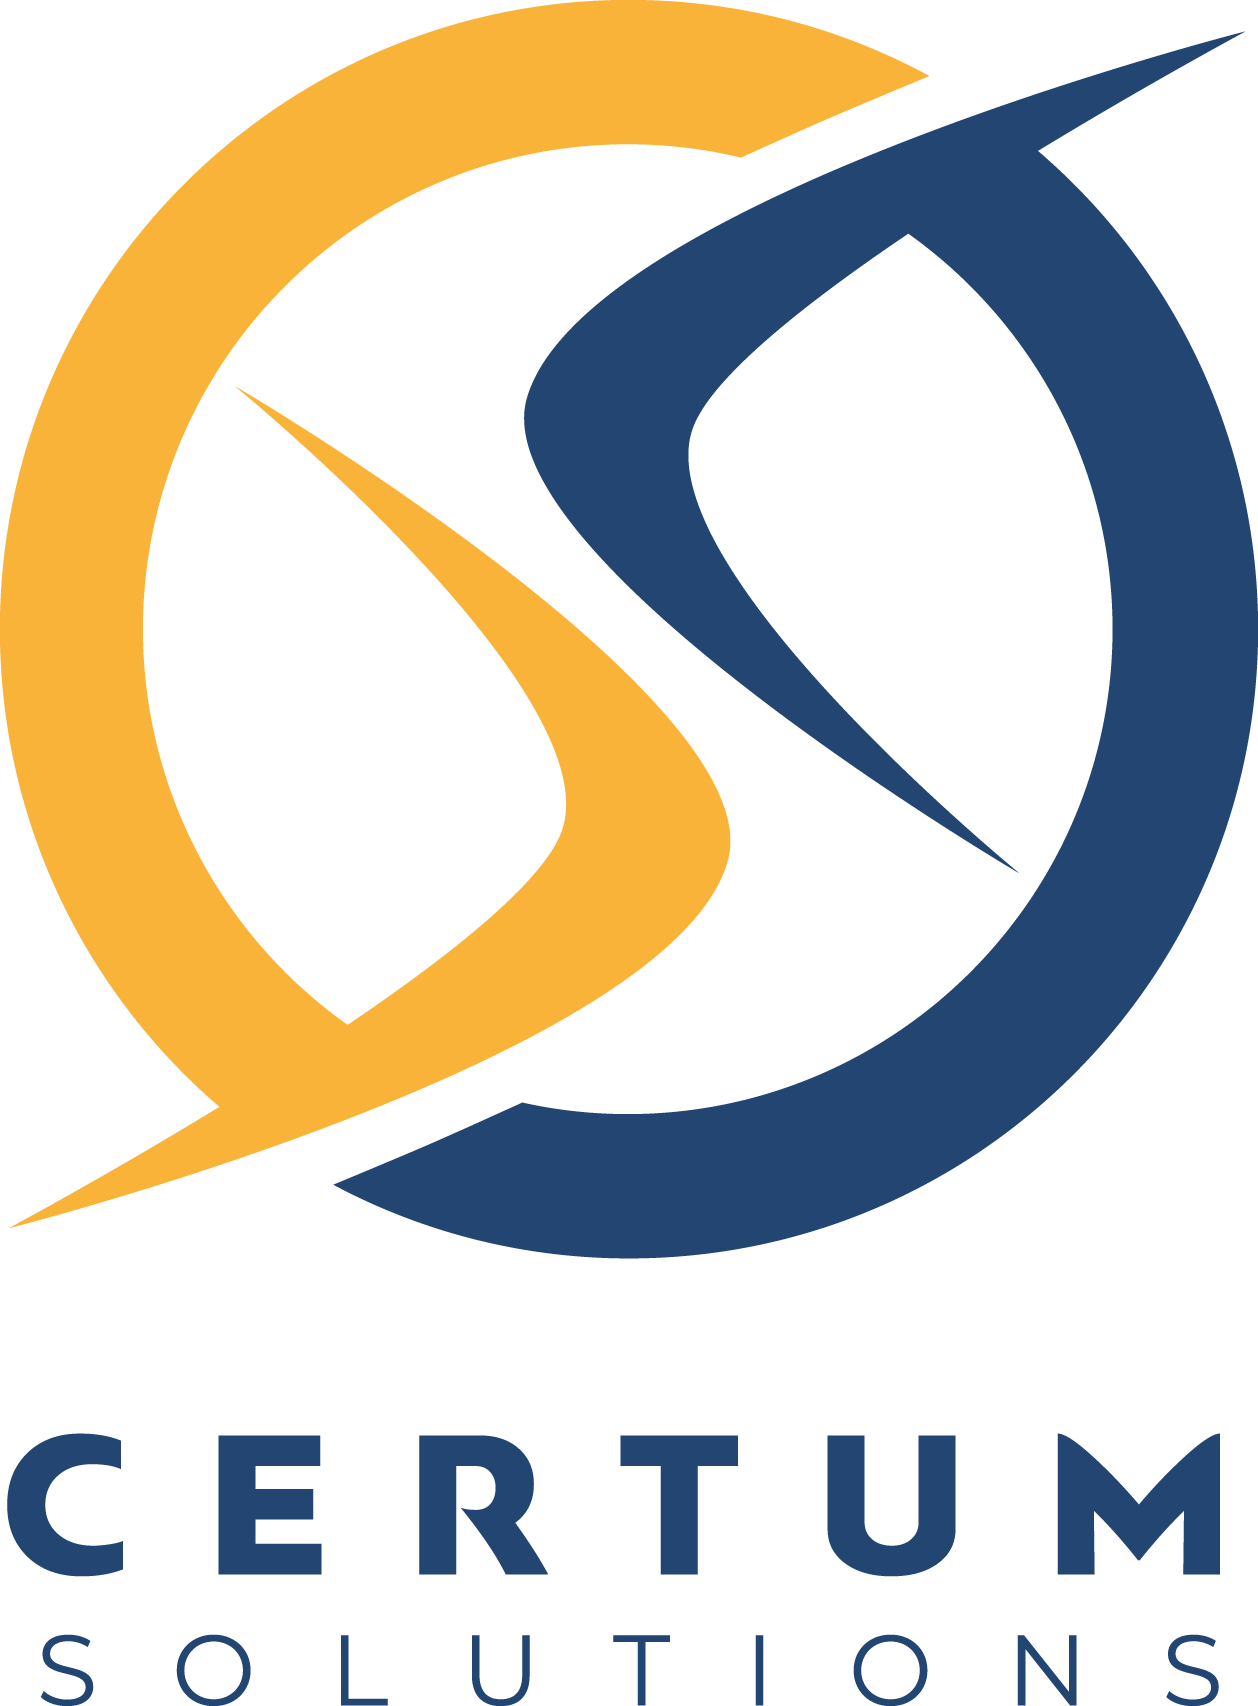 Certum Solutions Logo